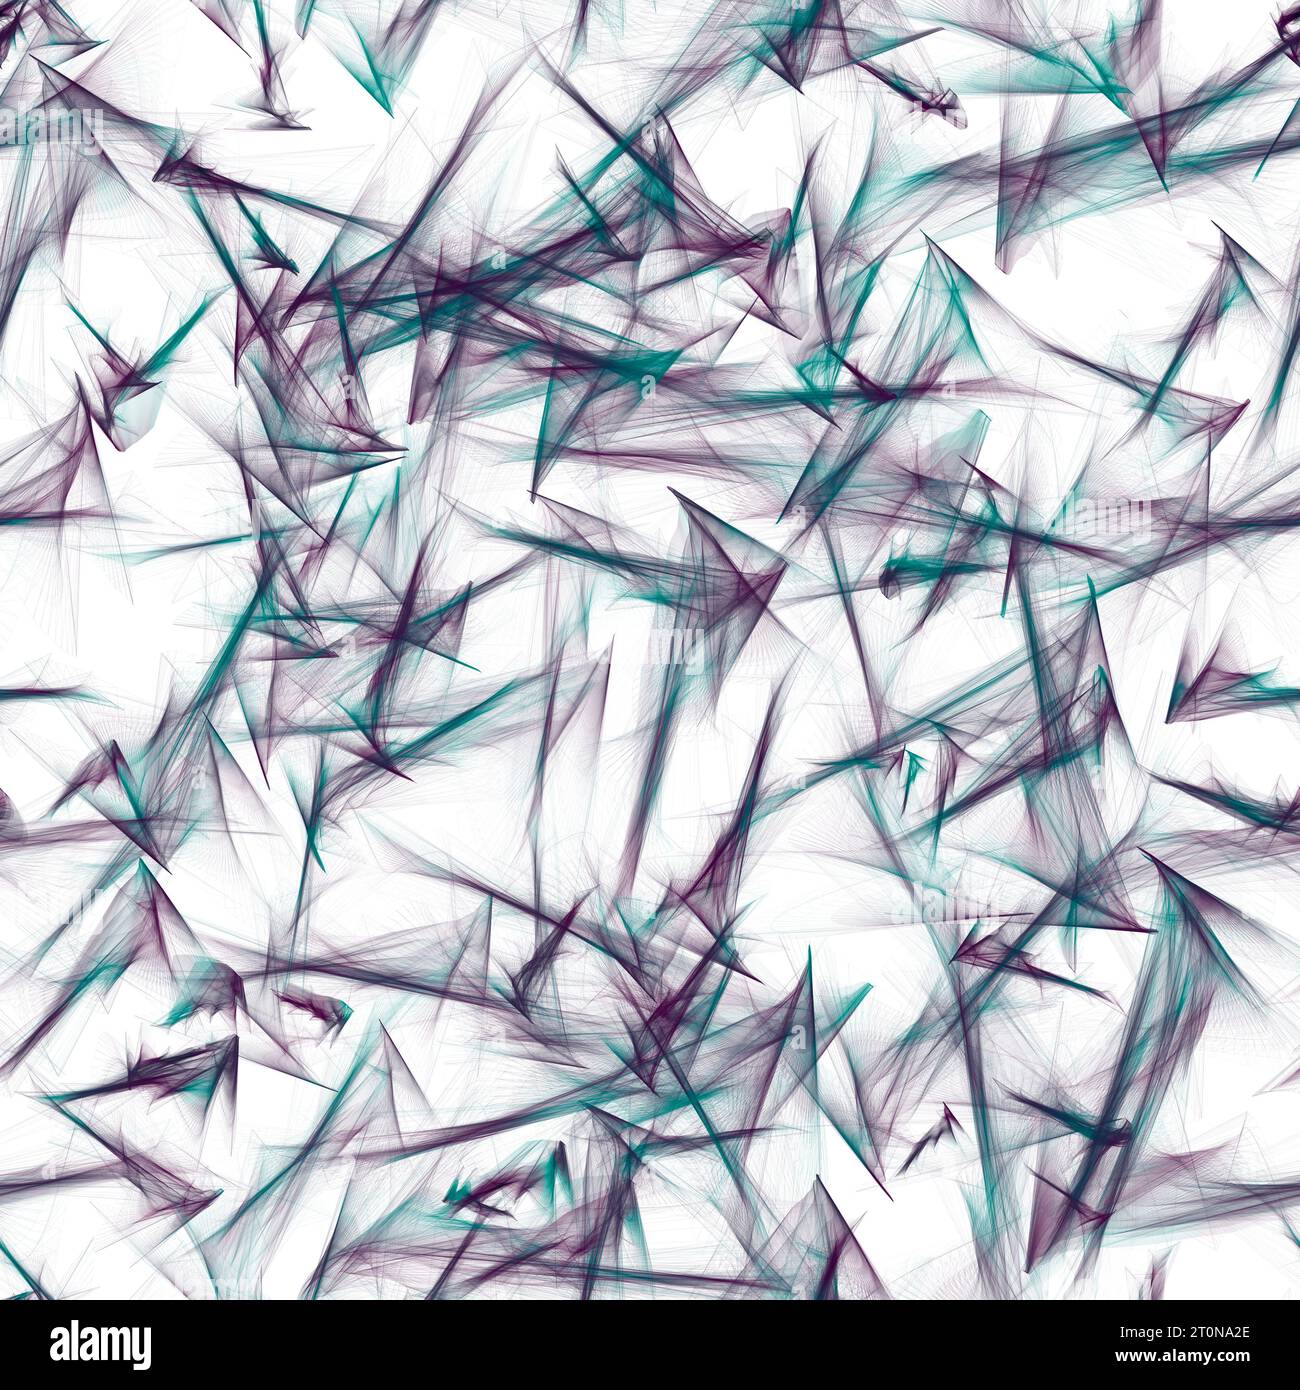 Abstrakter fraktaler Hintergrund mit violetten und blauen Pinselstrichen. Scharfe Ecken. Nachahmung von Bleistiftskizzen. Nahtloses Wiederholungsmuster. Stockfoto